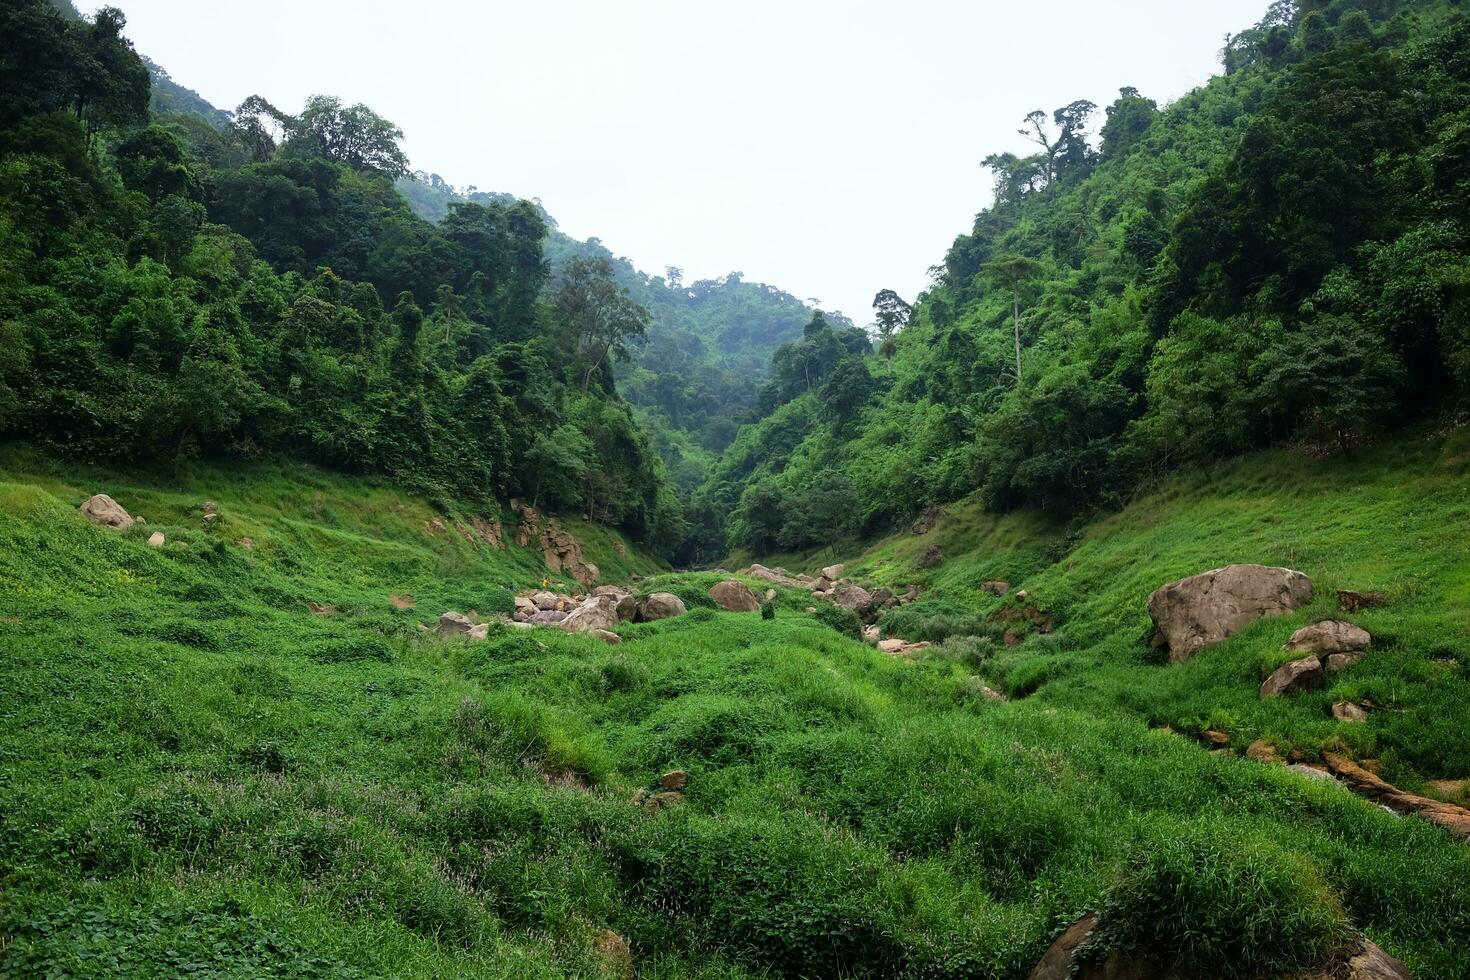 frescura paisaje para agua otoño y corriente fluido mediante rocas en tropical lluvia bosque y verdor salvaje selva. Khao chong lom a nakhonnayok provincia, Tailandia foto